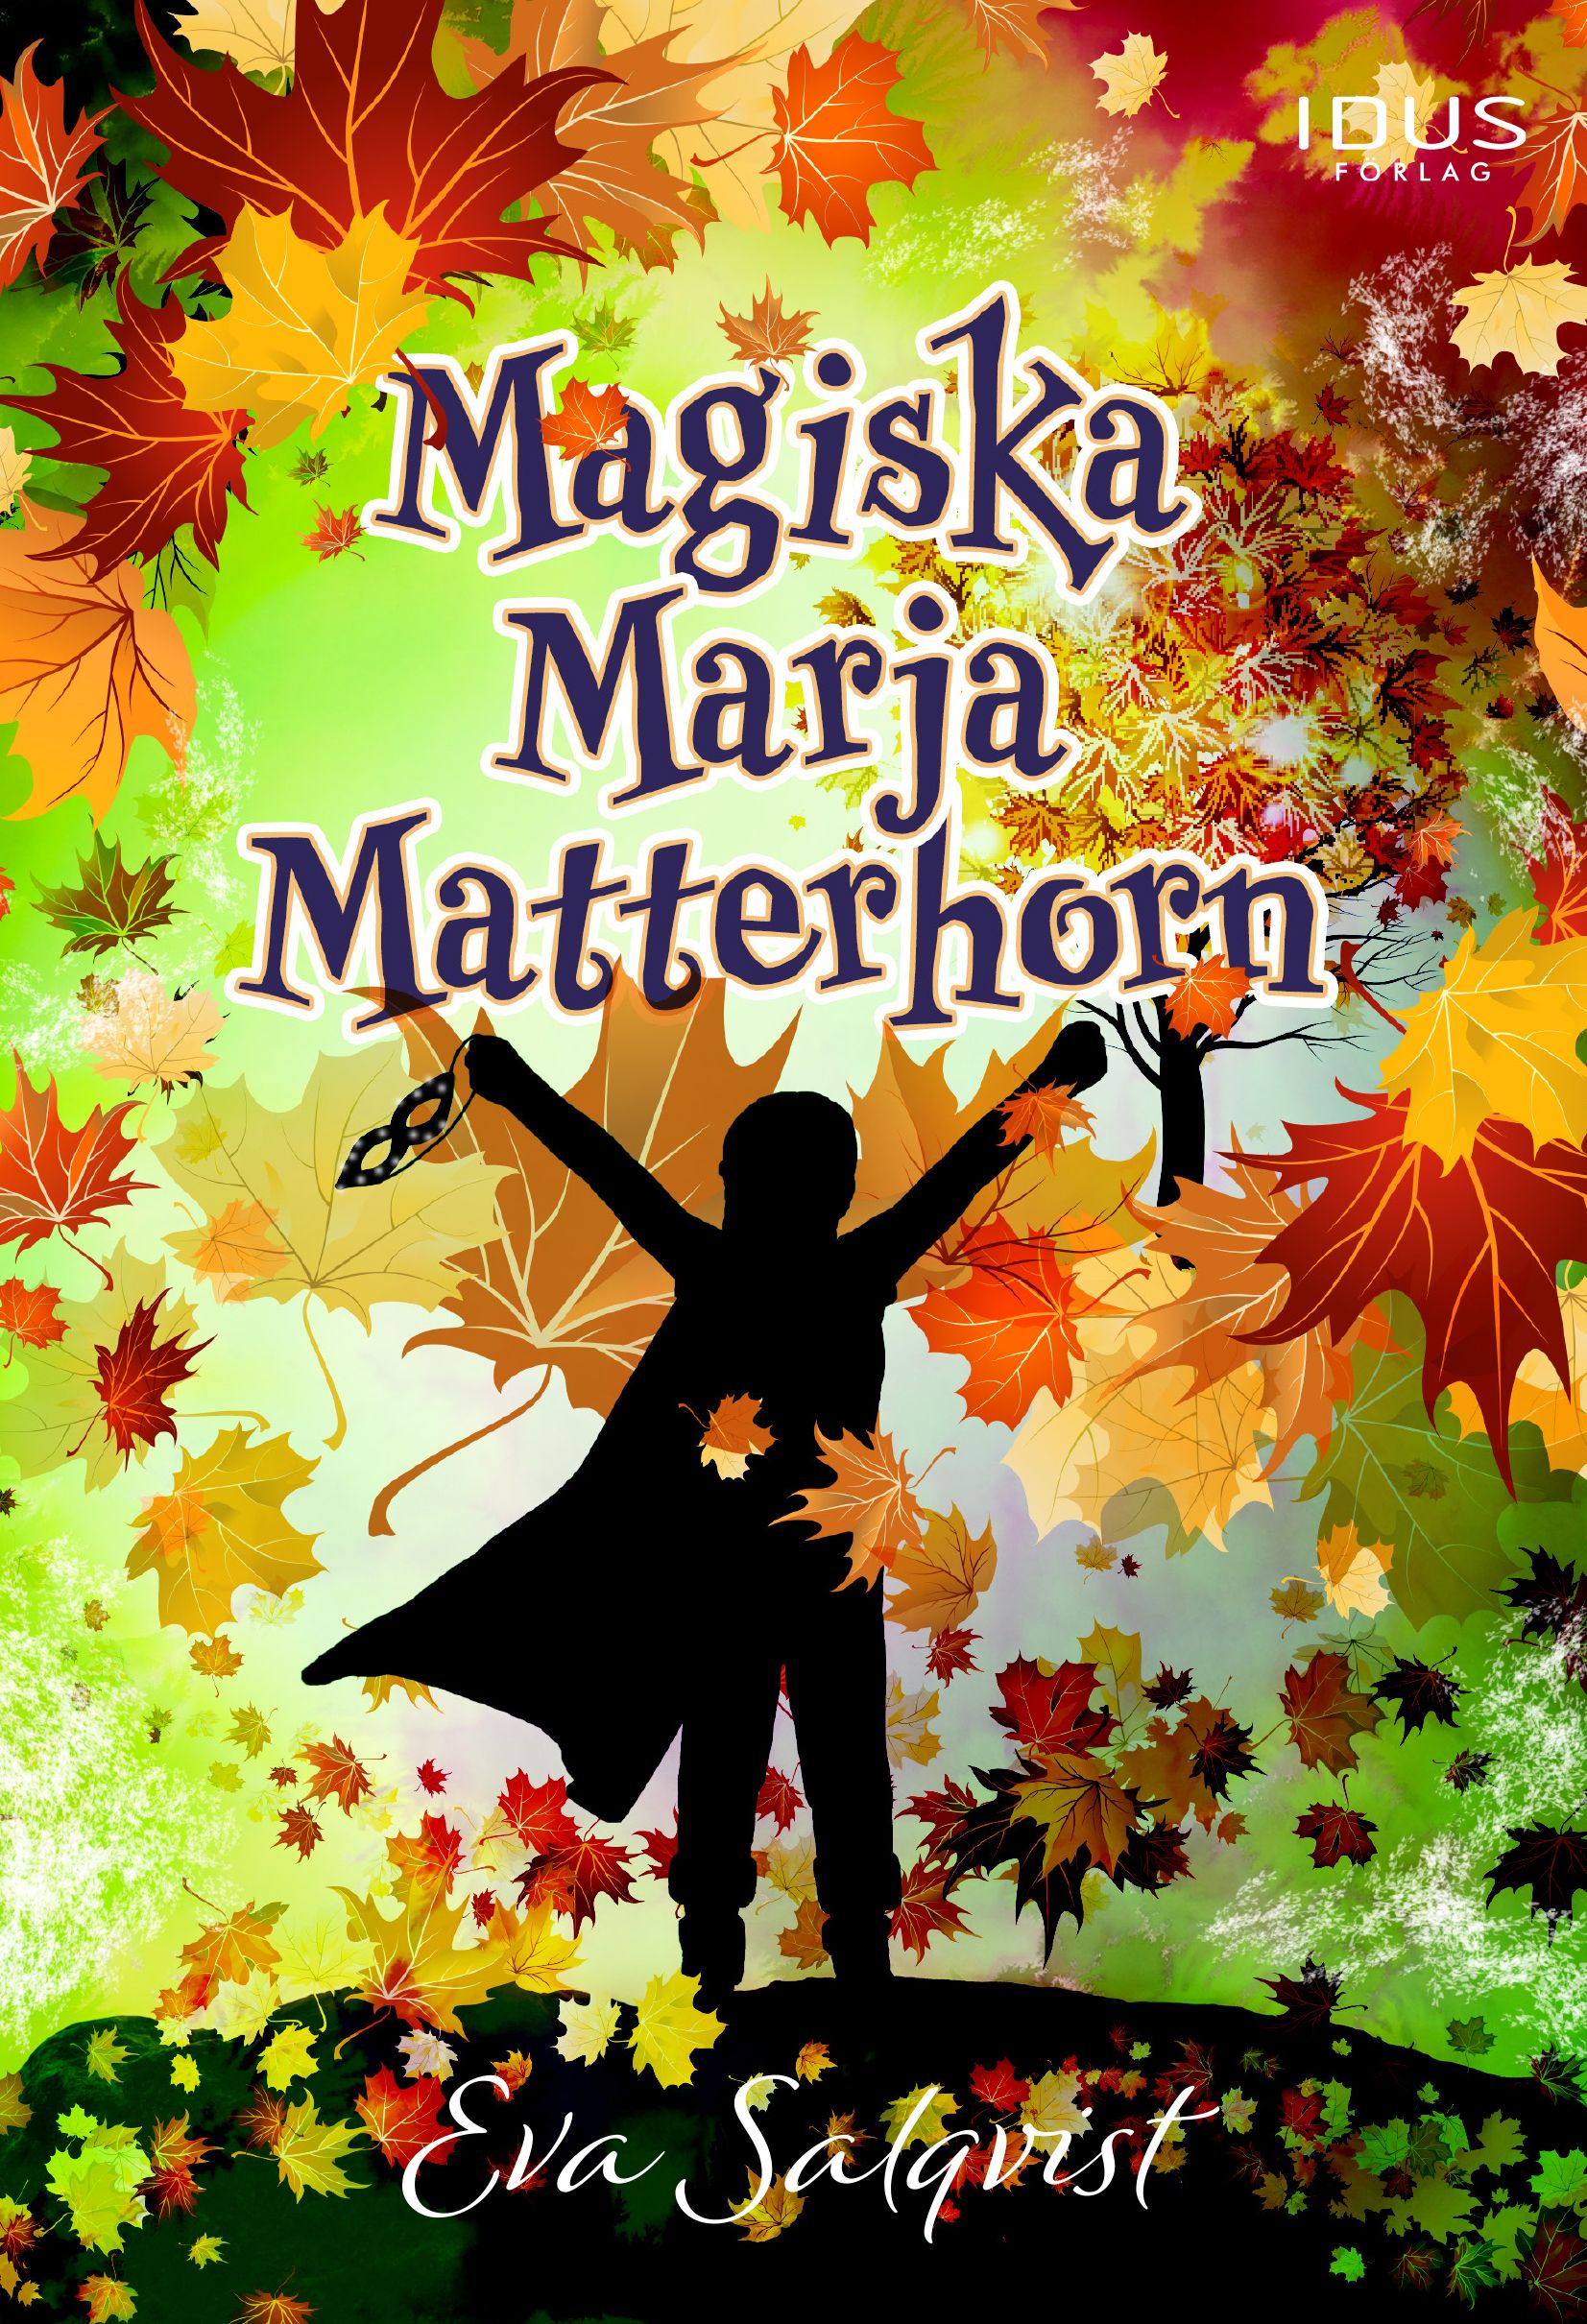 Magiska Marja Matterhorn, e-bok av Eva Salqvist